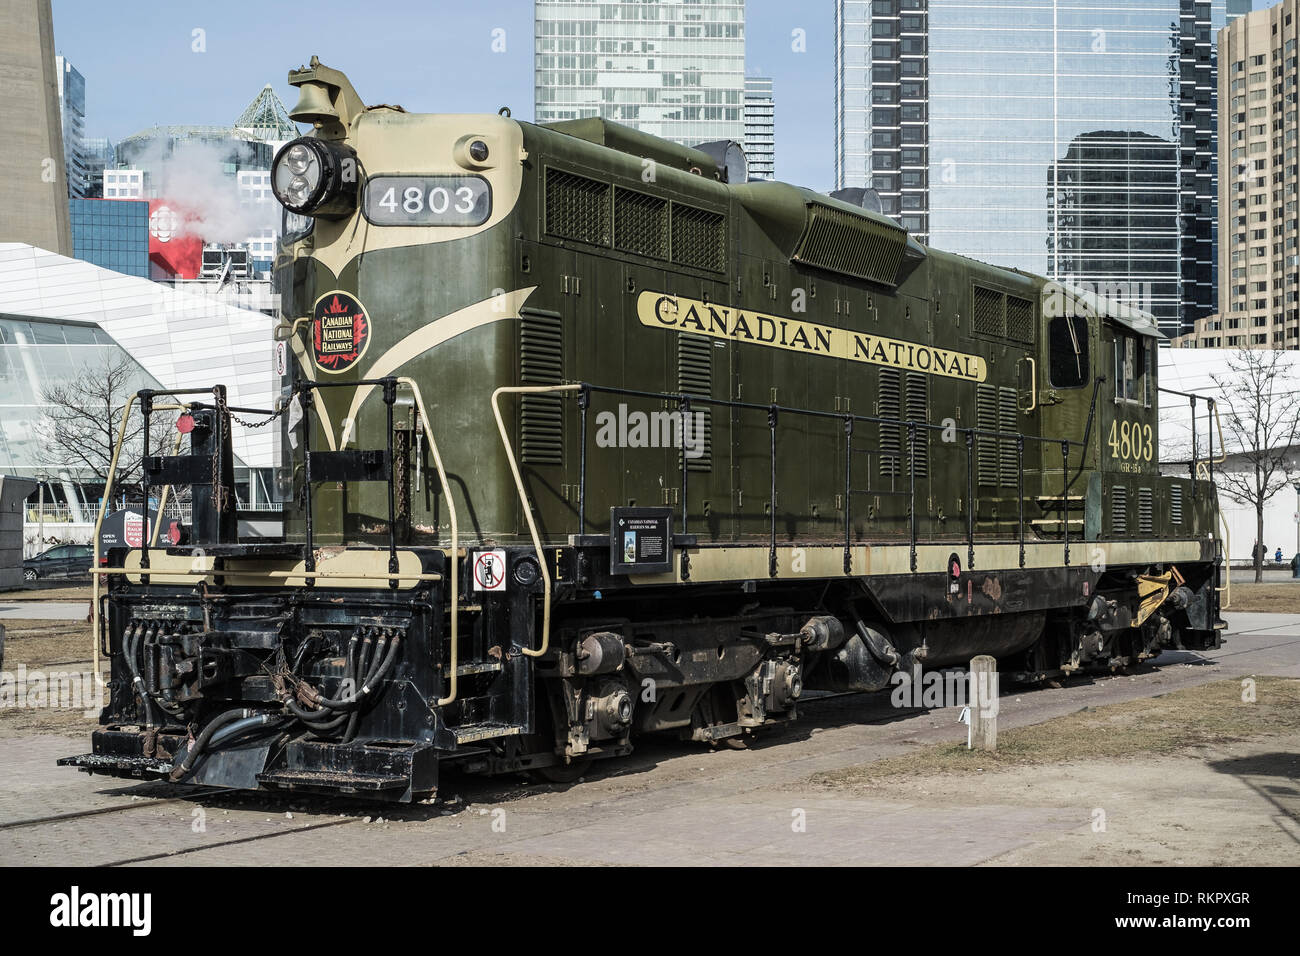 Toronto, Ontario, Canada - le 12 janvier 2019 : vieille locomotive au Roundhouse Park (National Rail Museum) près de la tour CN. L'attraction touristique. Banque D'Images